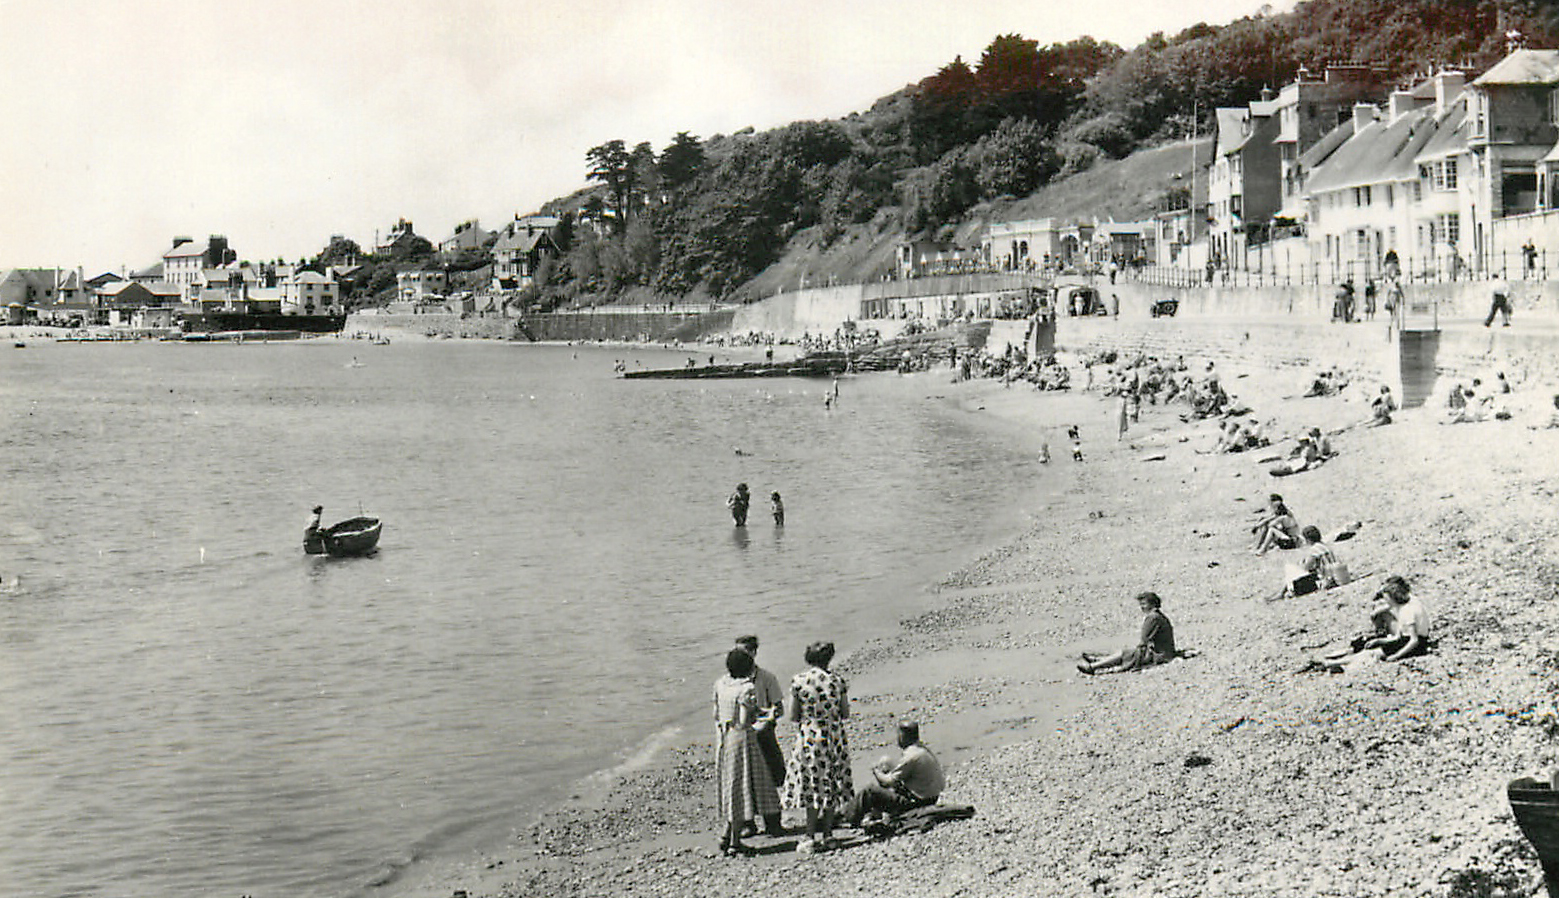 The beach and Marine Parade, Lyme Regis circa 1950s